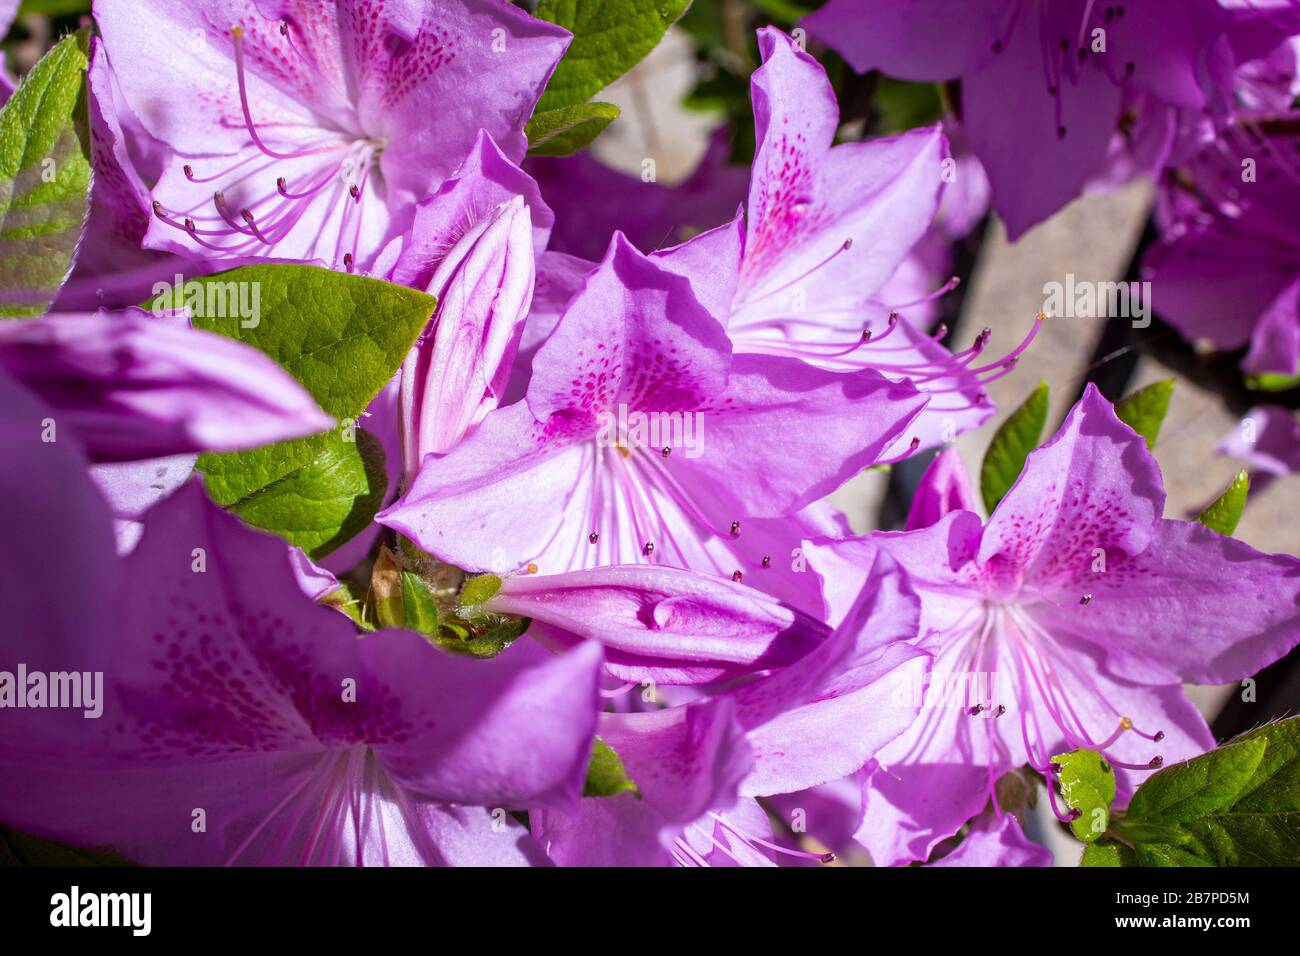 Rhododendron púrpura catawba flores en un arbusto Foto de stock